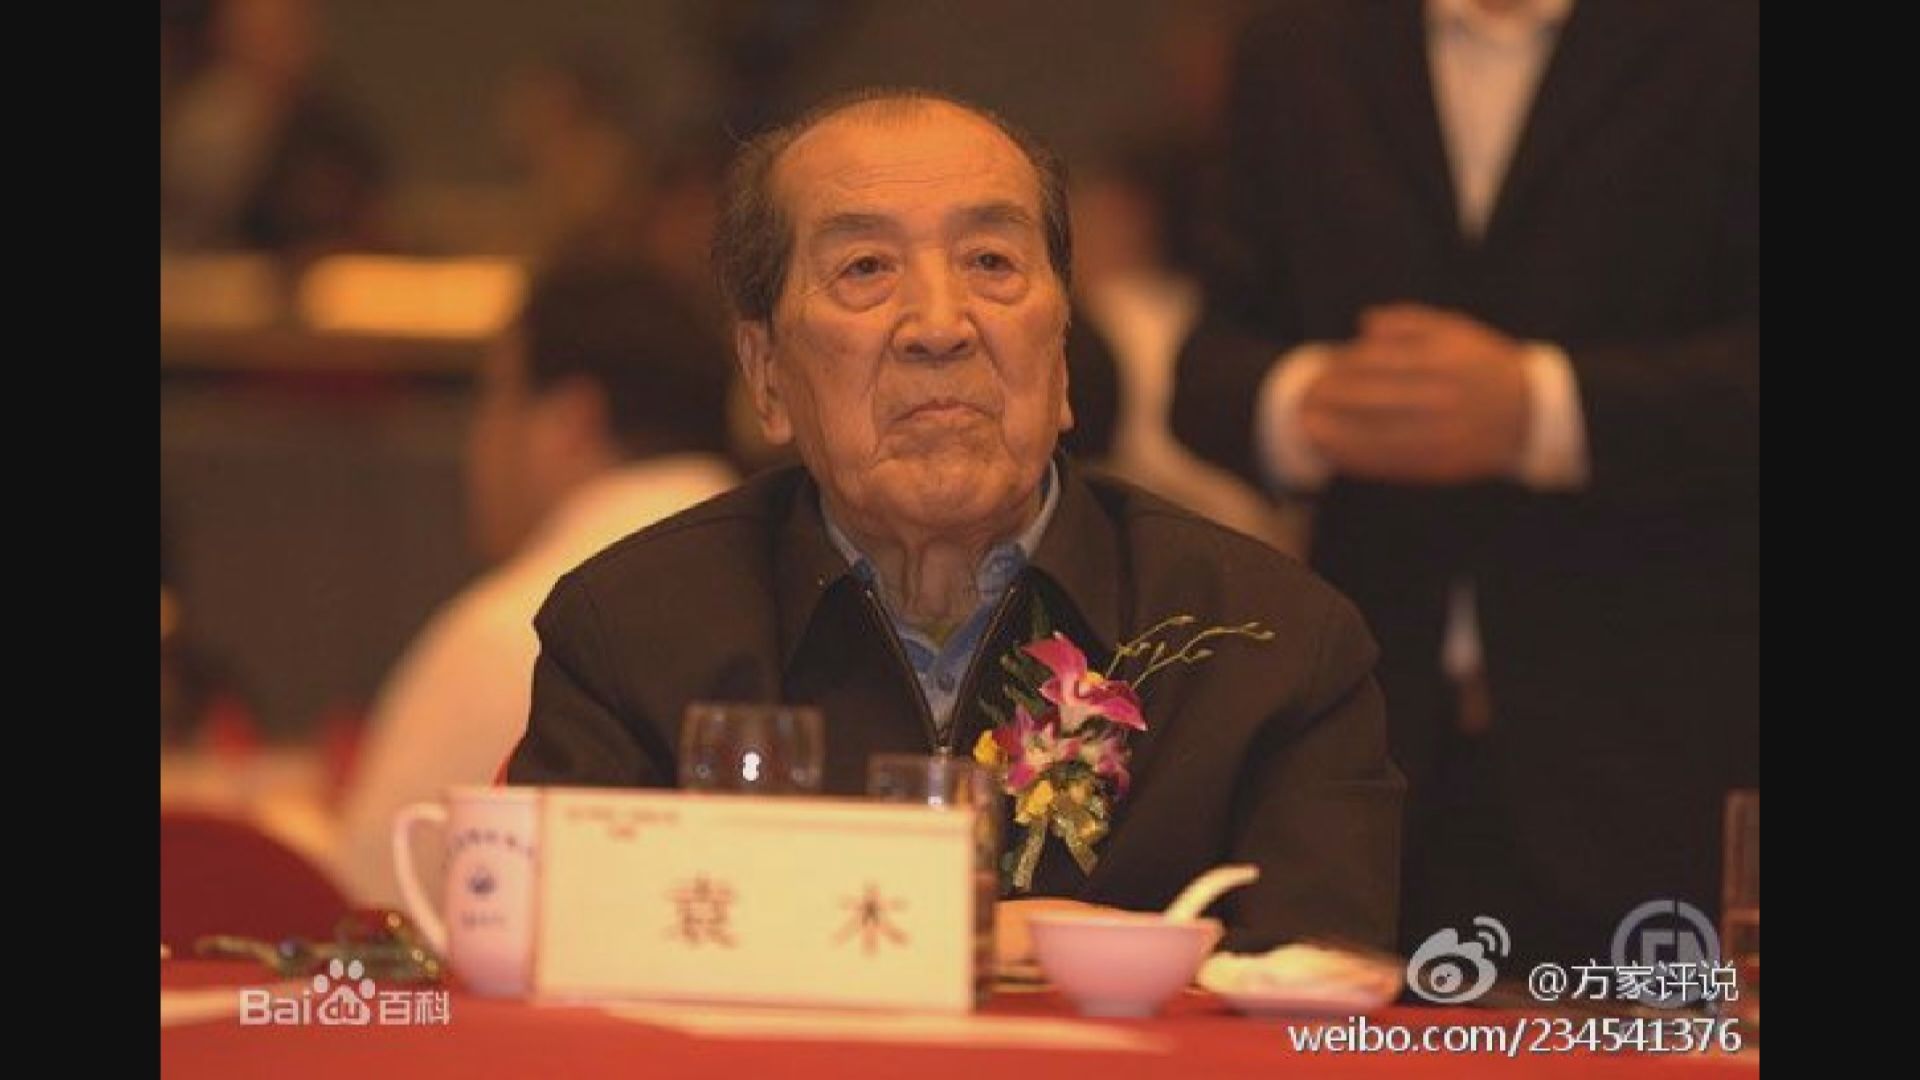 國務院前發言人袁木逝世　終年91歲